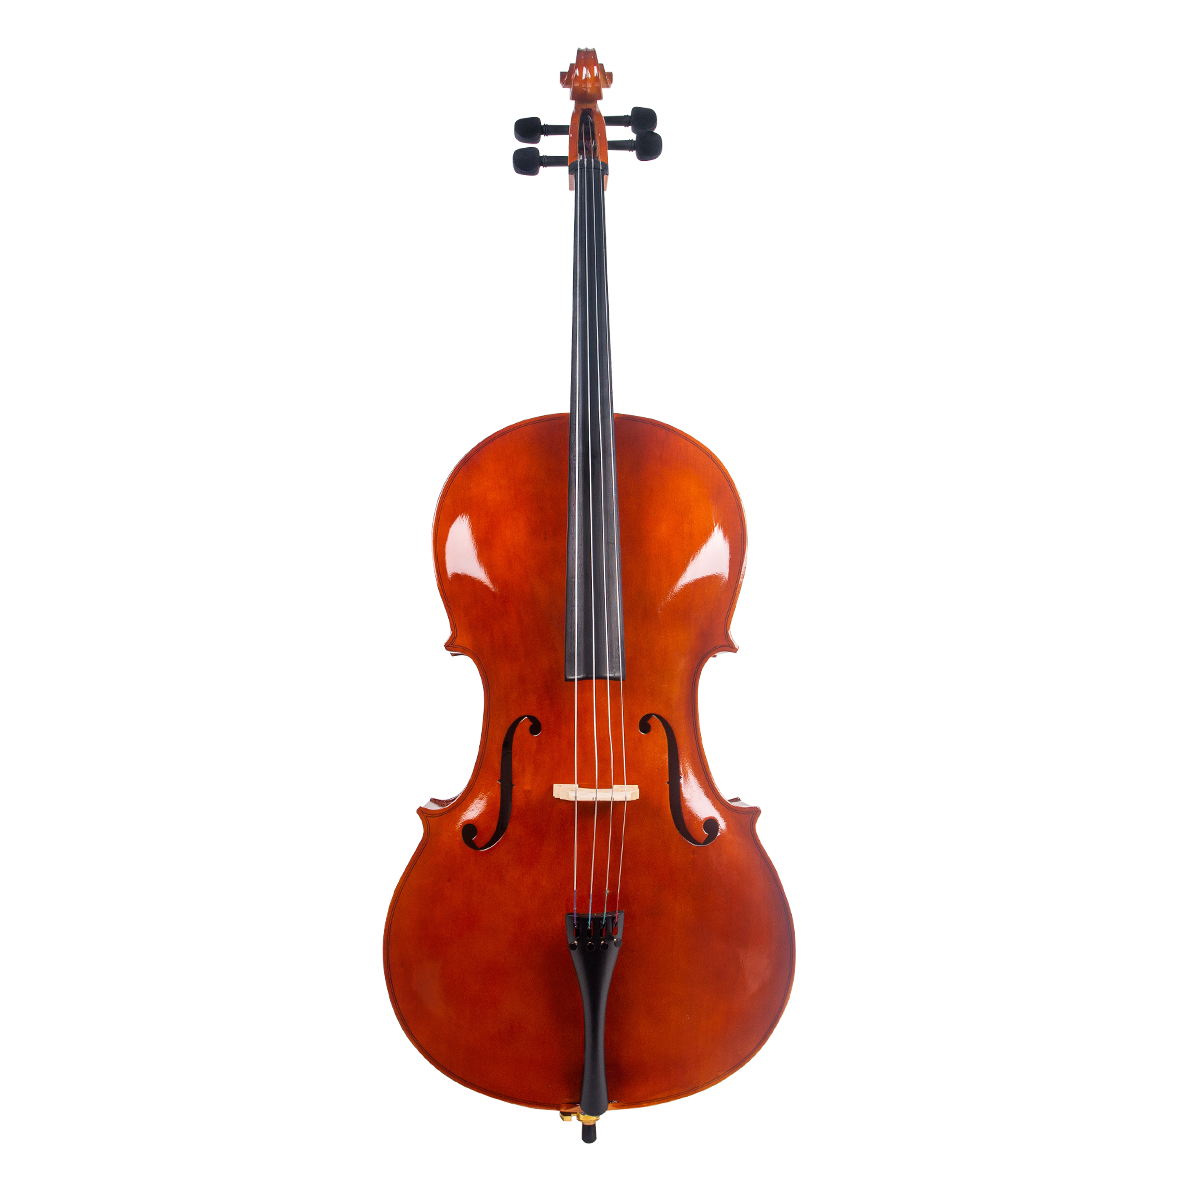 cello akustik mandalika 4/4 biola besar bonus hardcase fullset